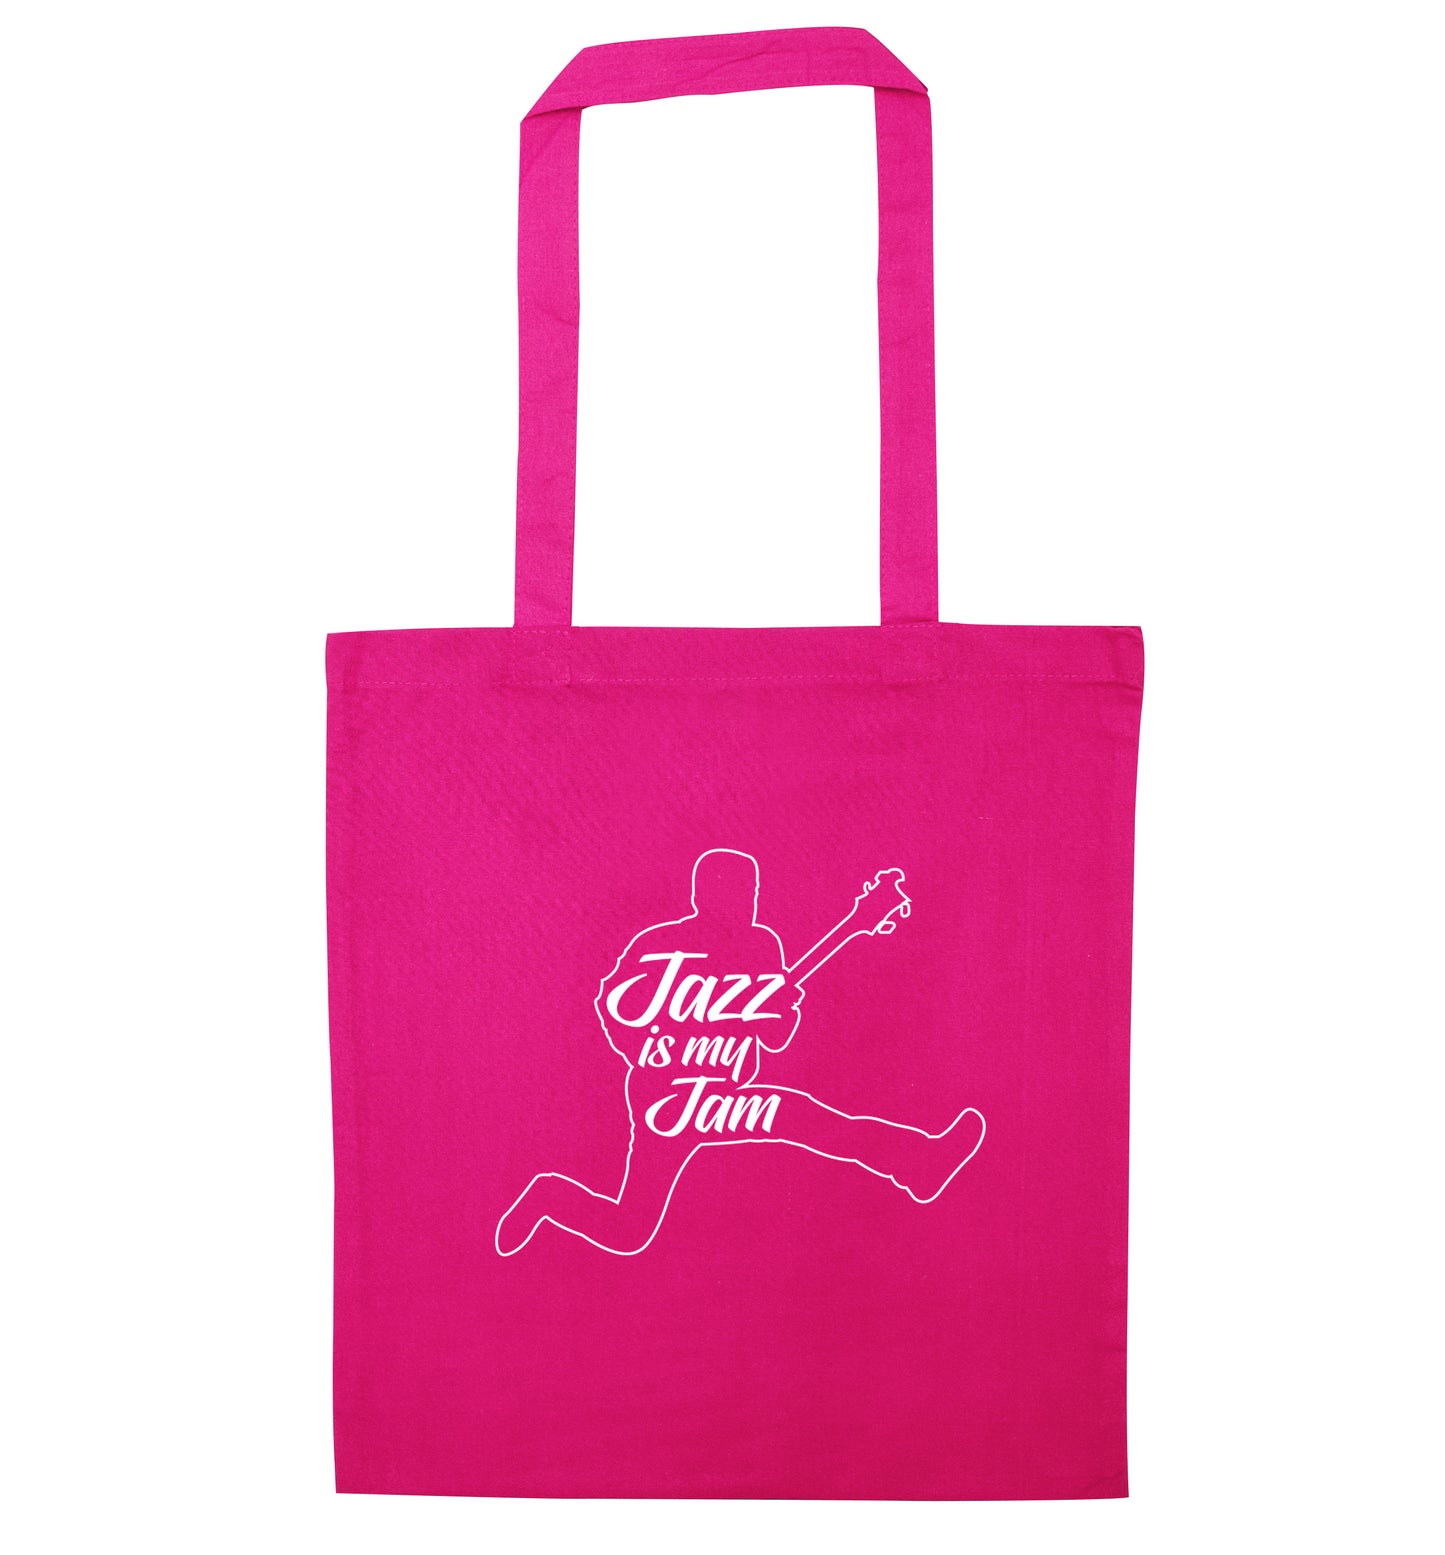 Jazz is my jam pink tote bag